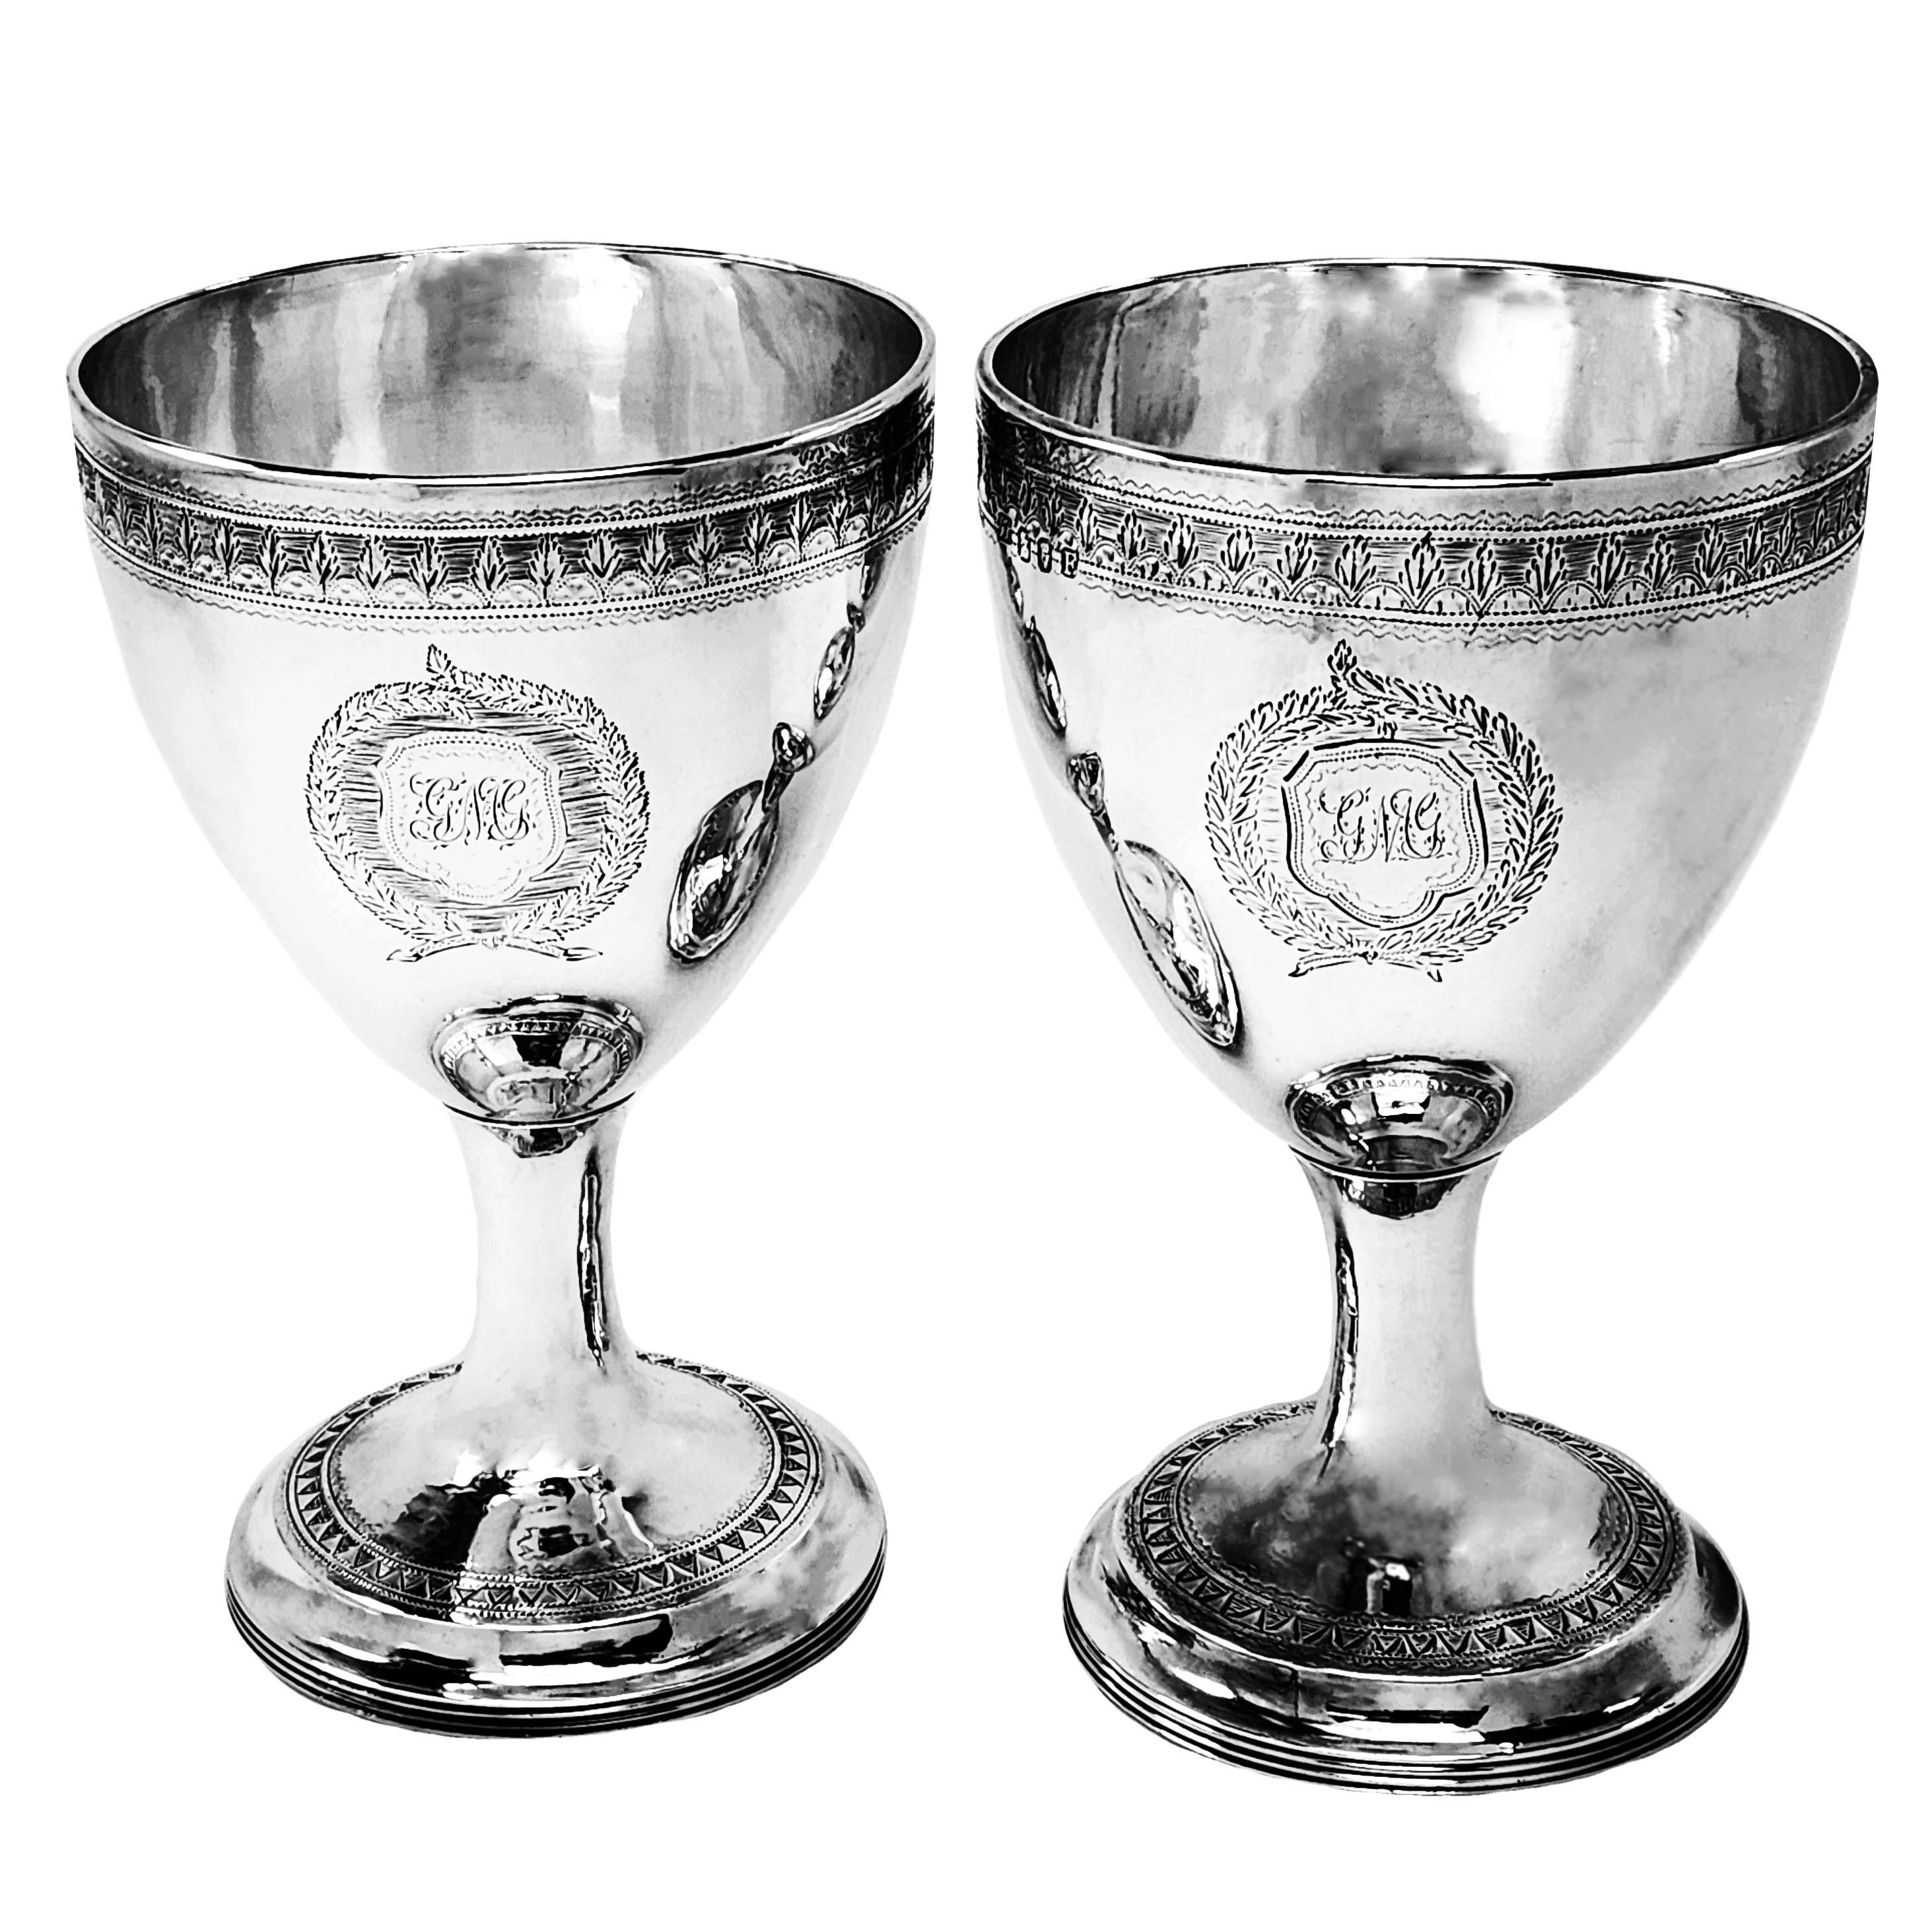 Ein Paar antike irische George III Silber Weinkelche. Diese Pokale sind von hervorragender Größe und jeder ist mit Bändern mit eingravierten Mustern verziert und jeder hat zwei eingravierte Wappen.

Hergestellt in Dublin in den Jahren 1802 und 1808